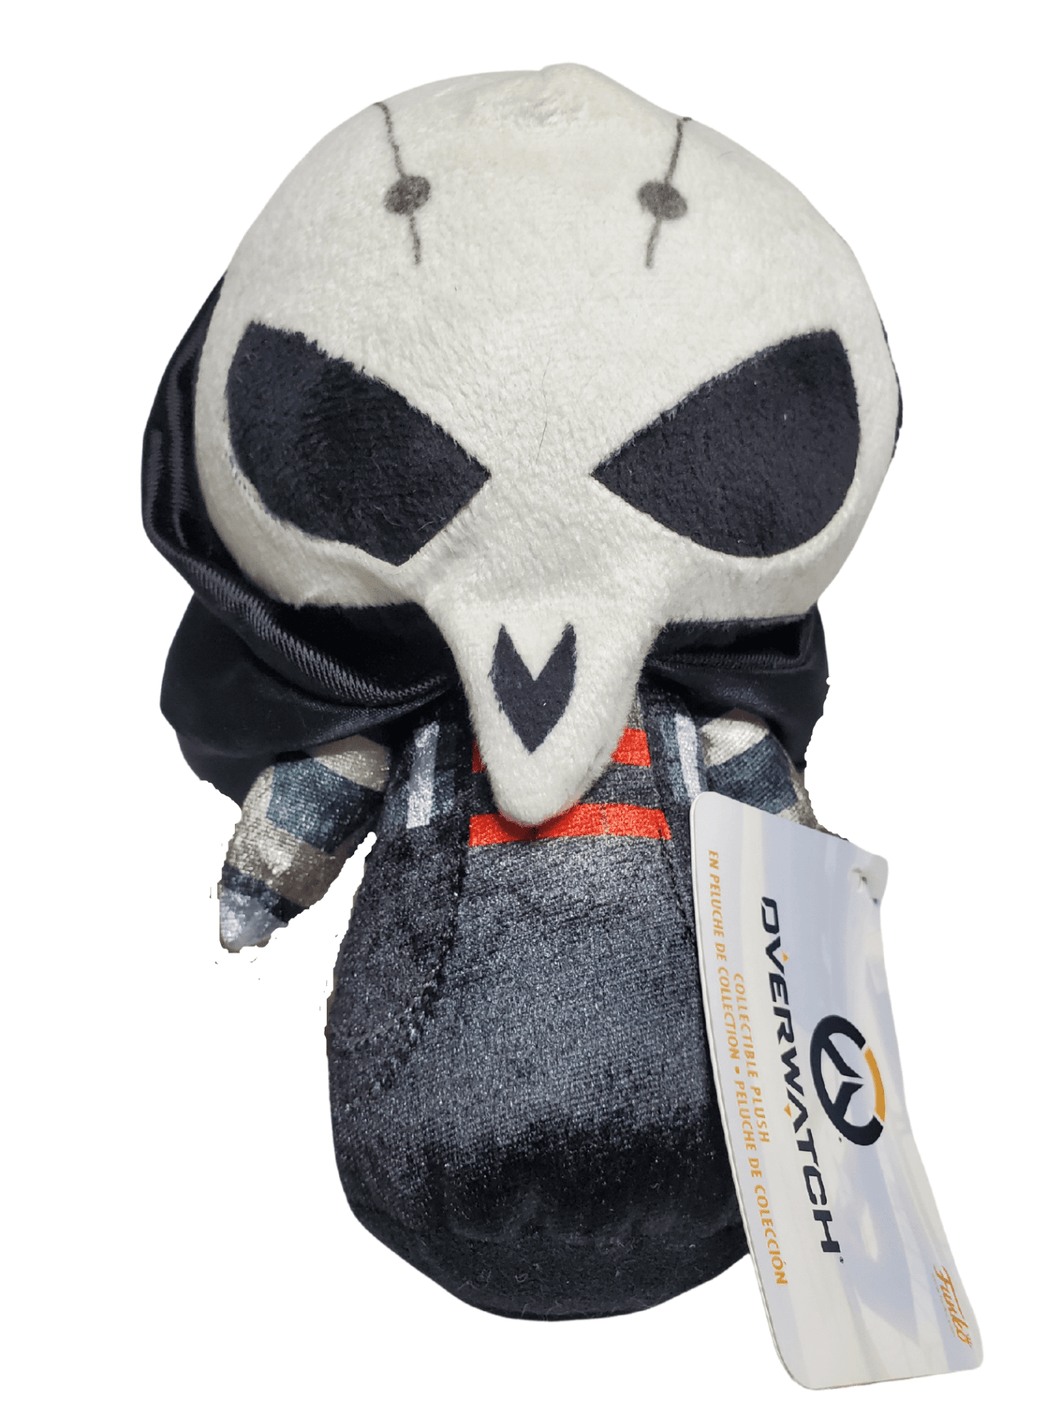  Overwatch Reaper Plush 